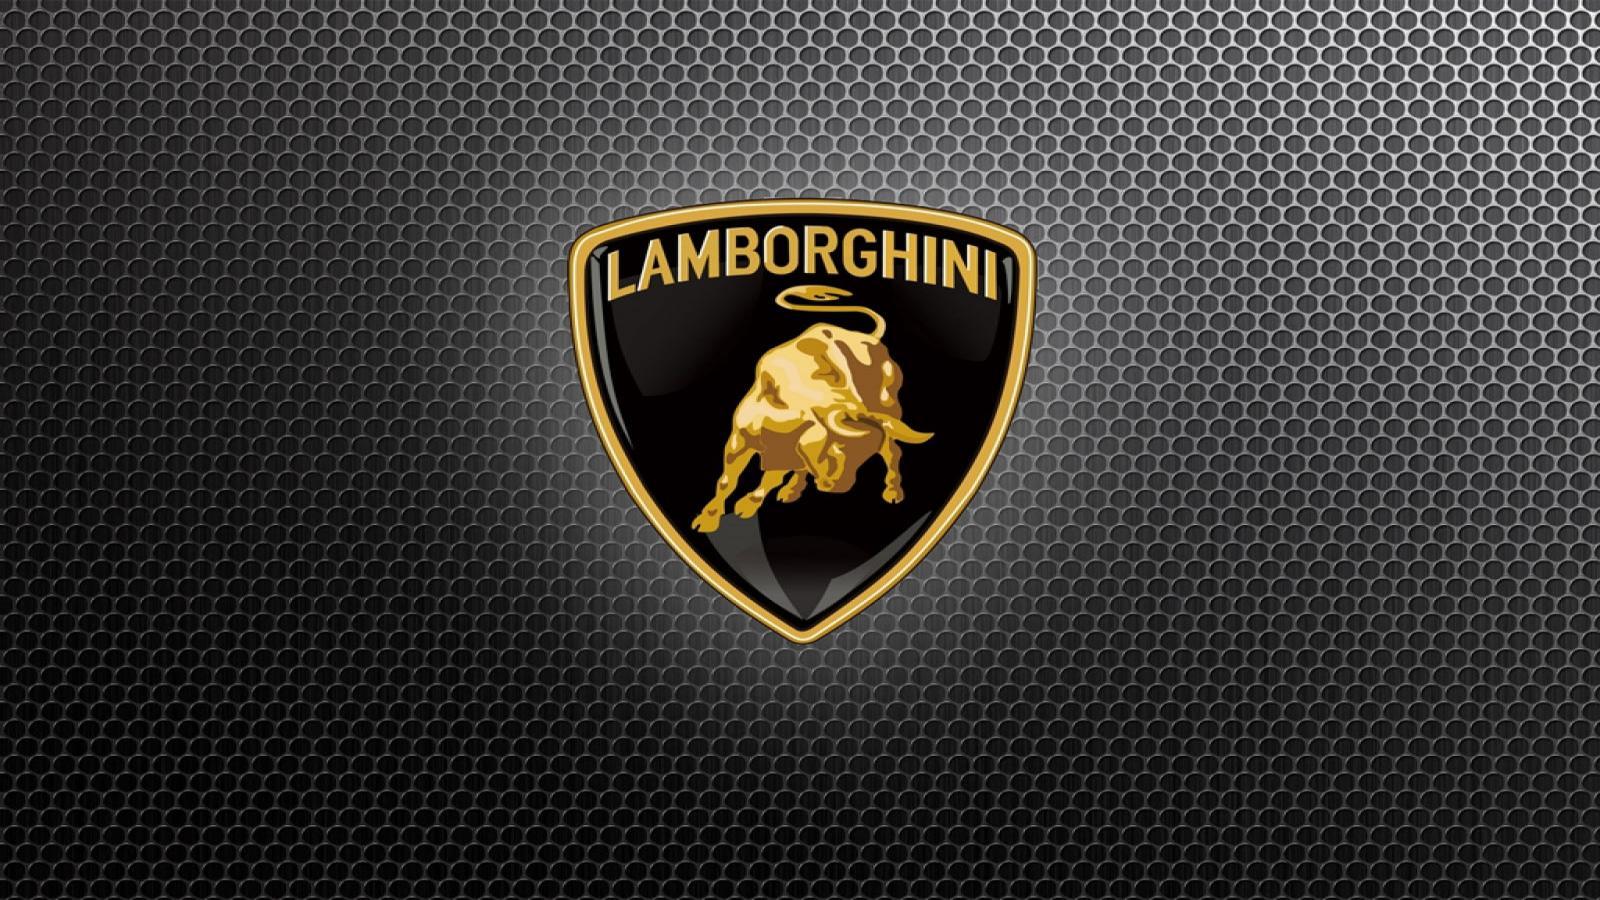 Lamborghini Car Logo Wallpaper